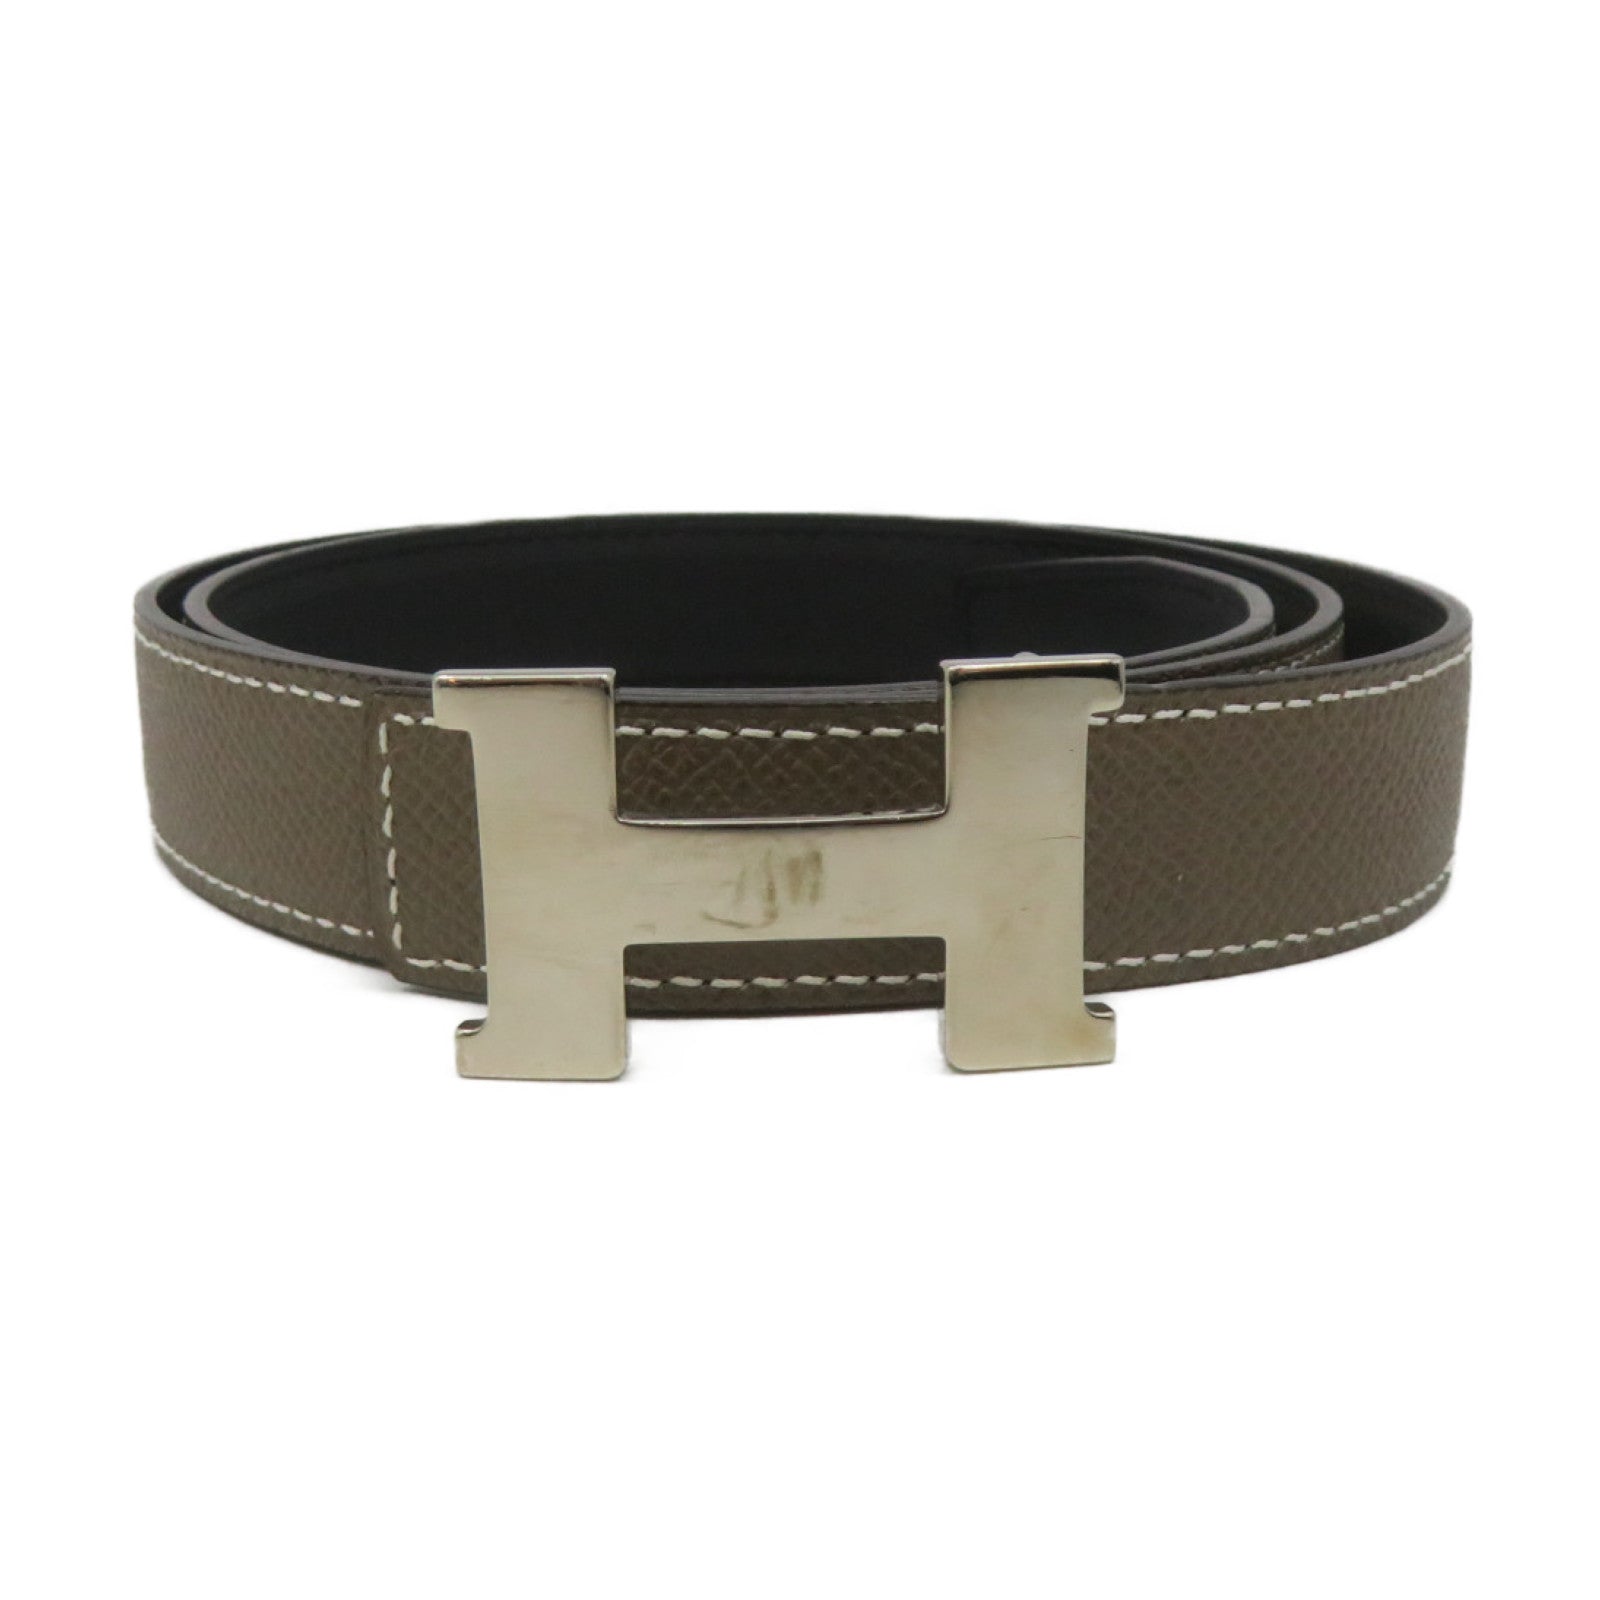 Premium Calf leather belt handcrafted, Blue Epsom-Togo Leather Belt LB088